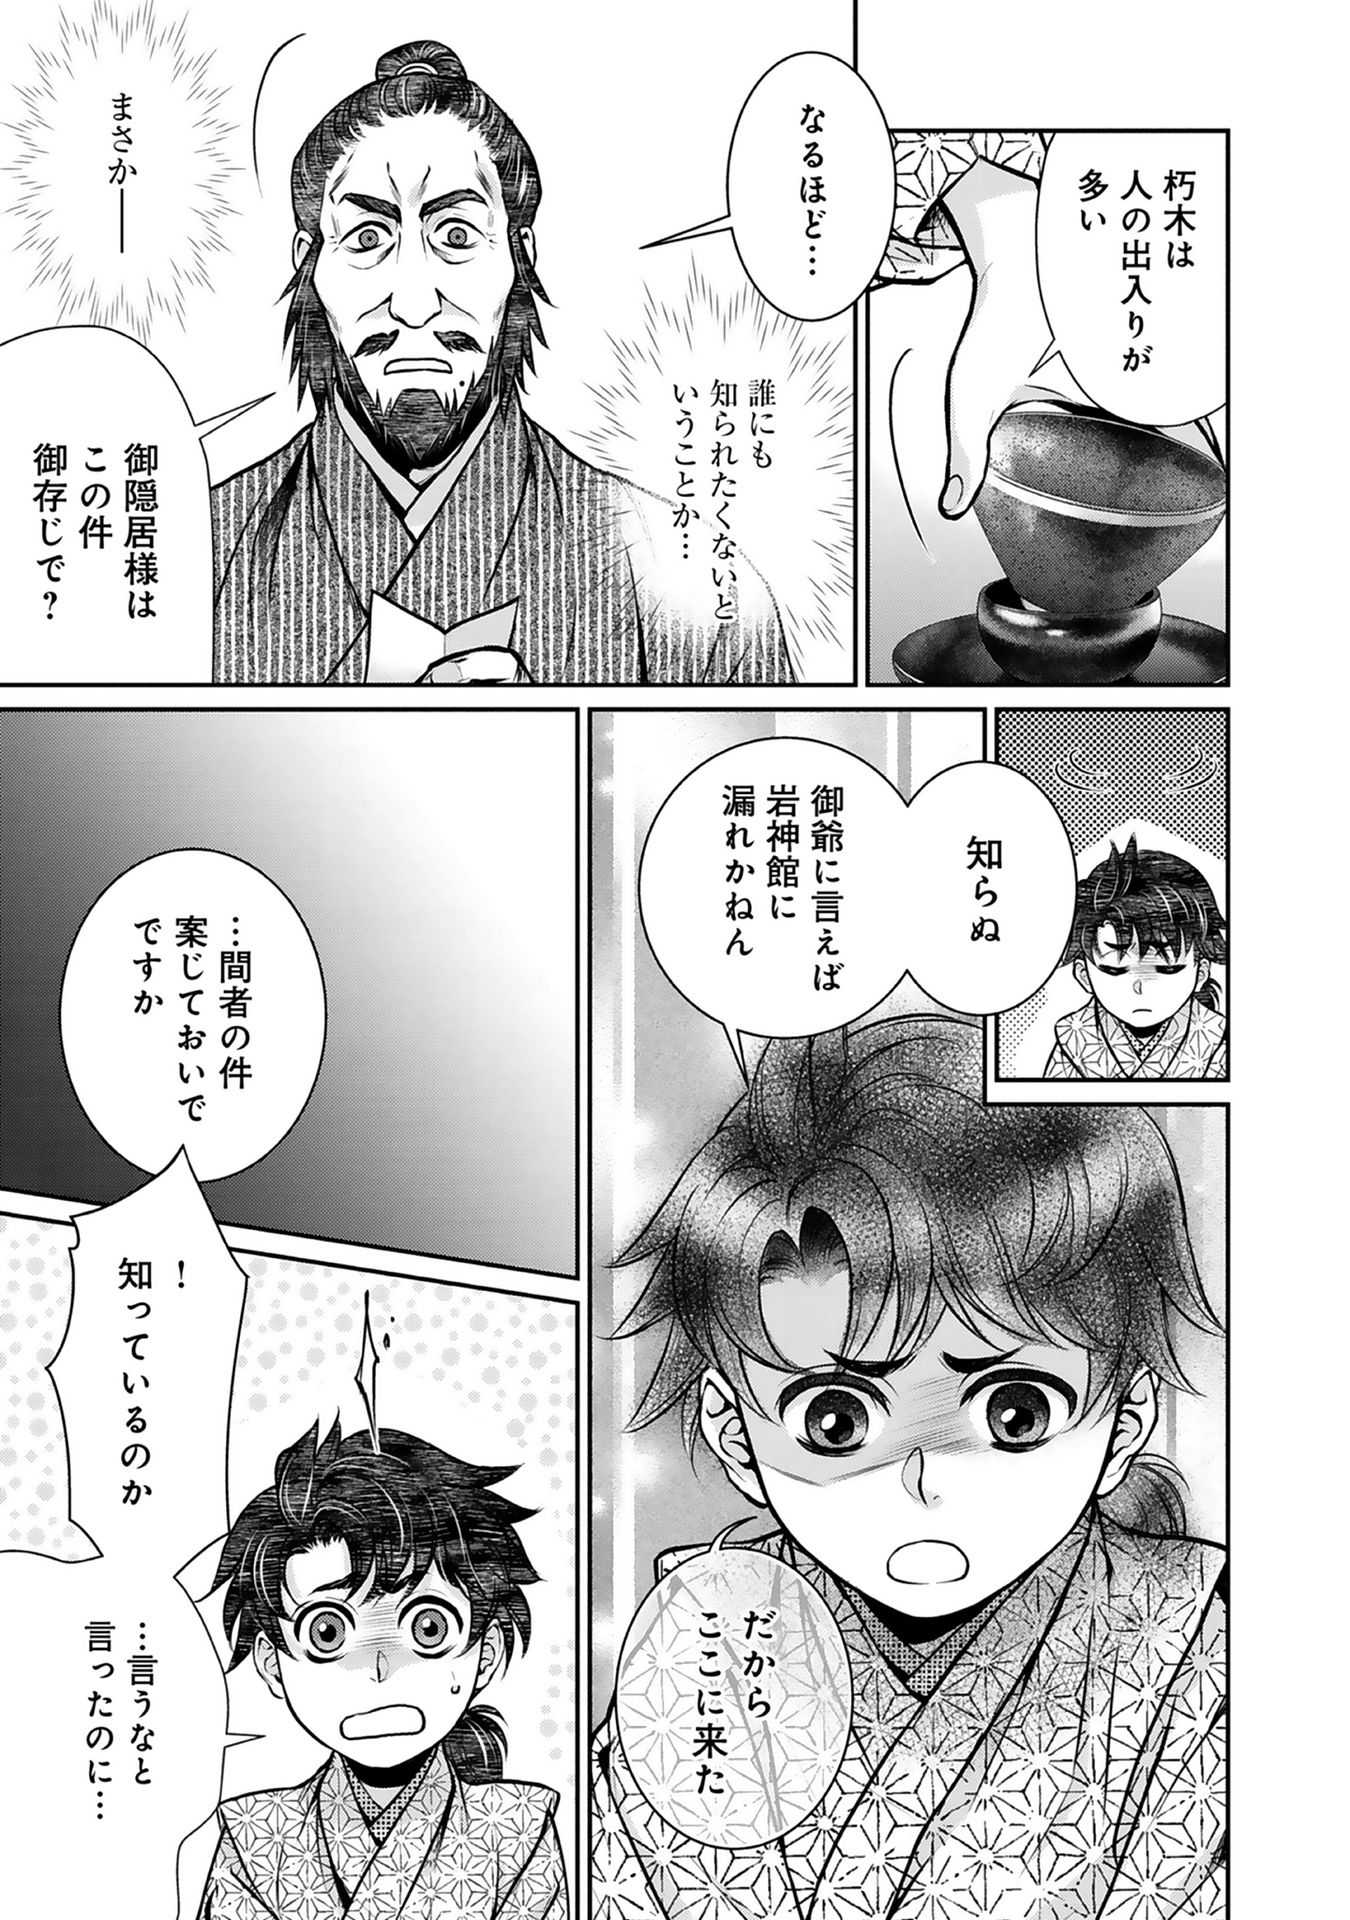 Afumi no Umi – Minamo ga Yureru Toki - Chapter 3 - Page 17